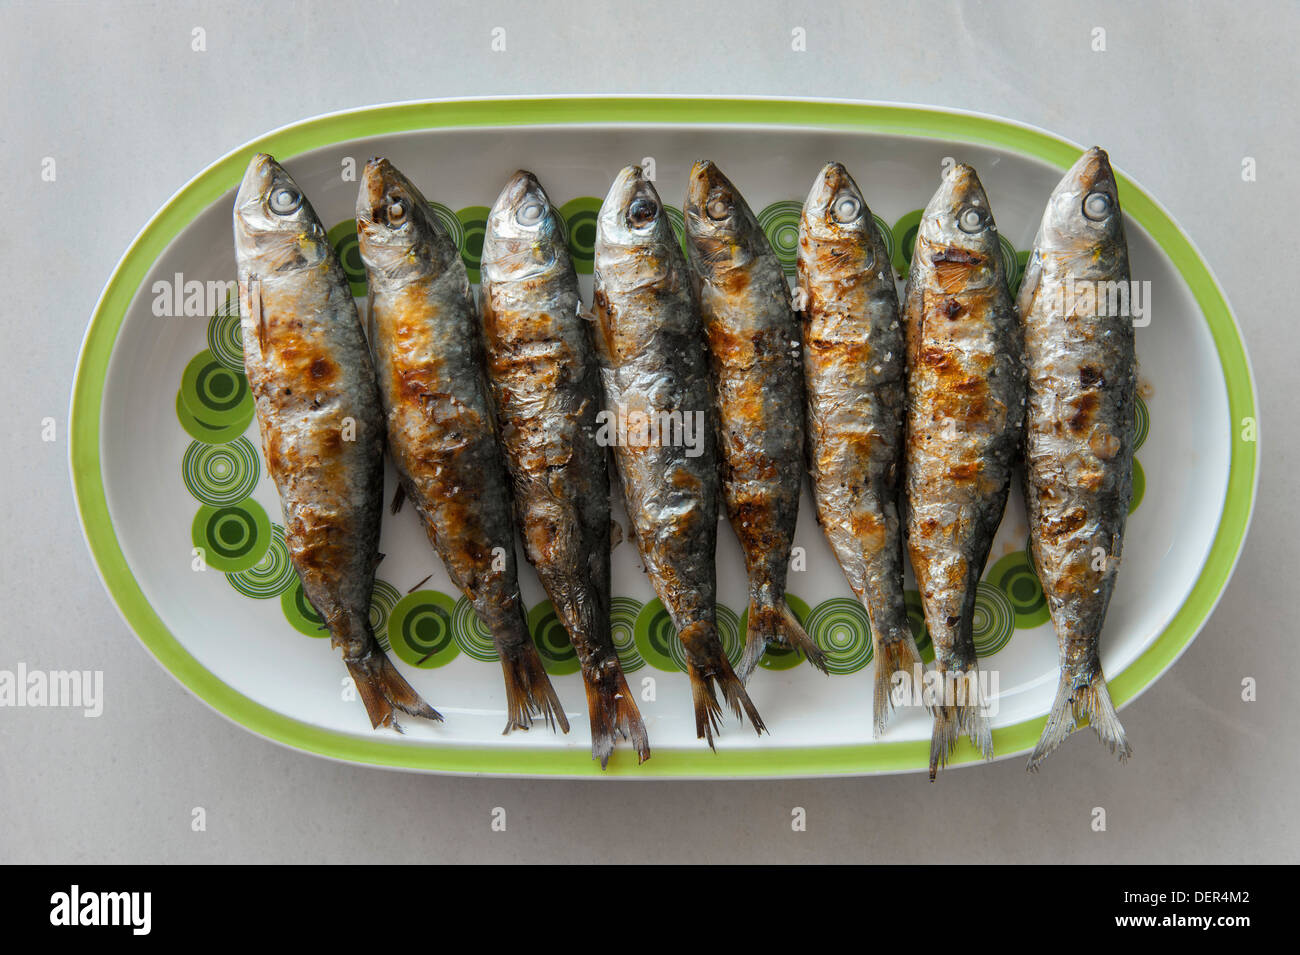 Huit sardines grillées (Sardina pilchardus) sur la plaque Banque D'Images